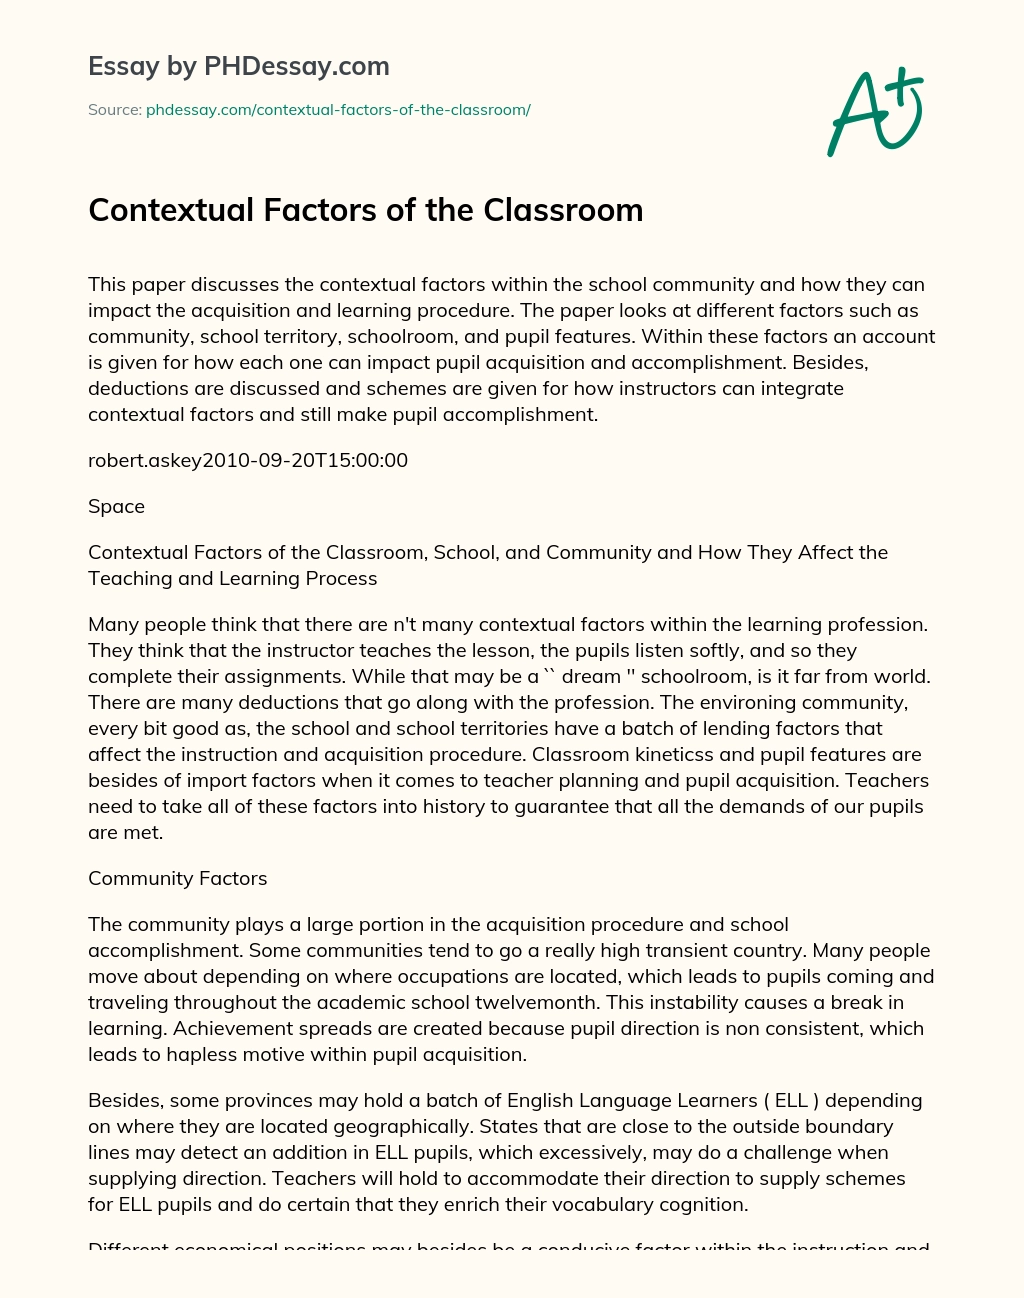 Contextual Factors of the Classroom essay